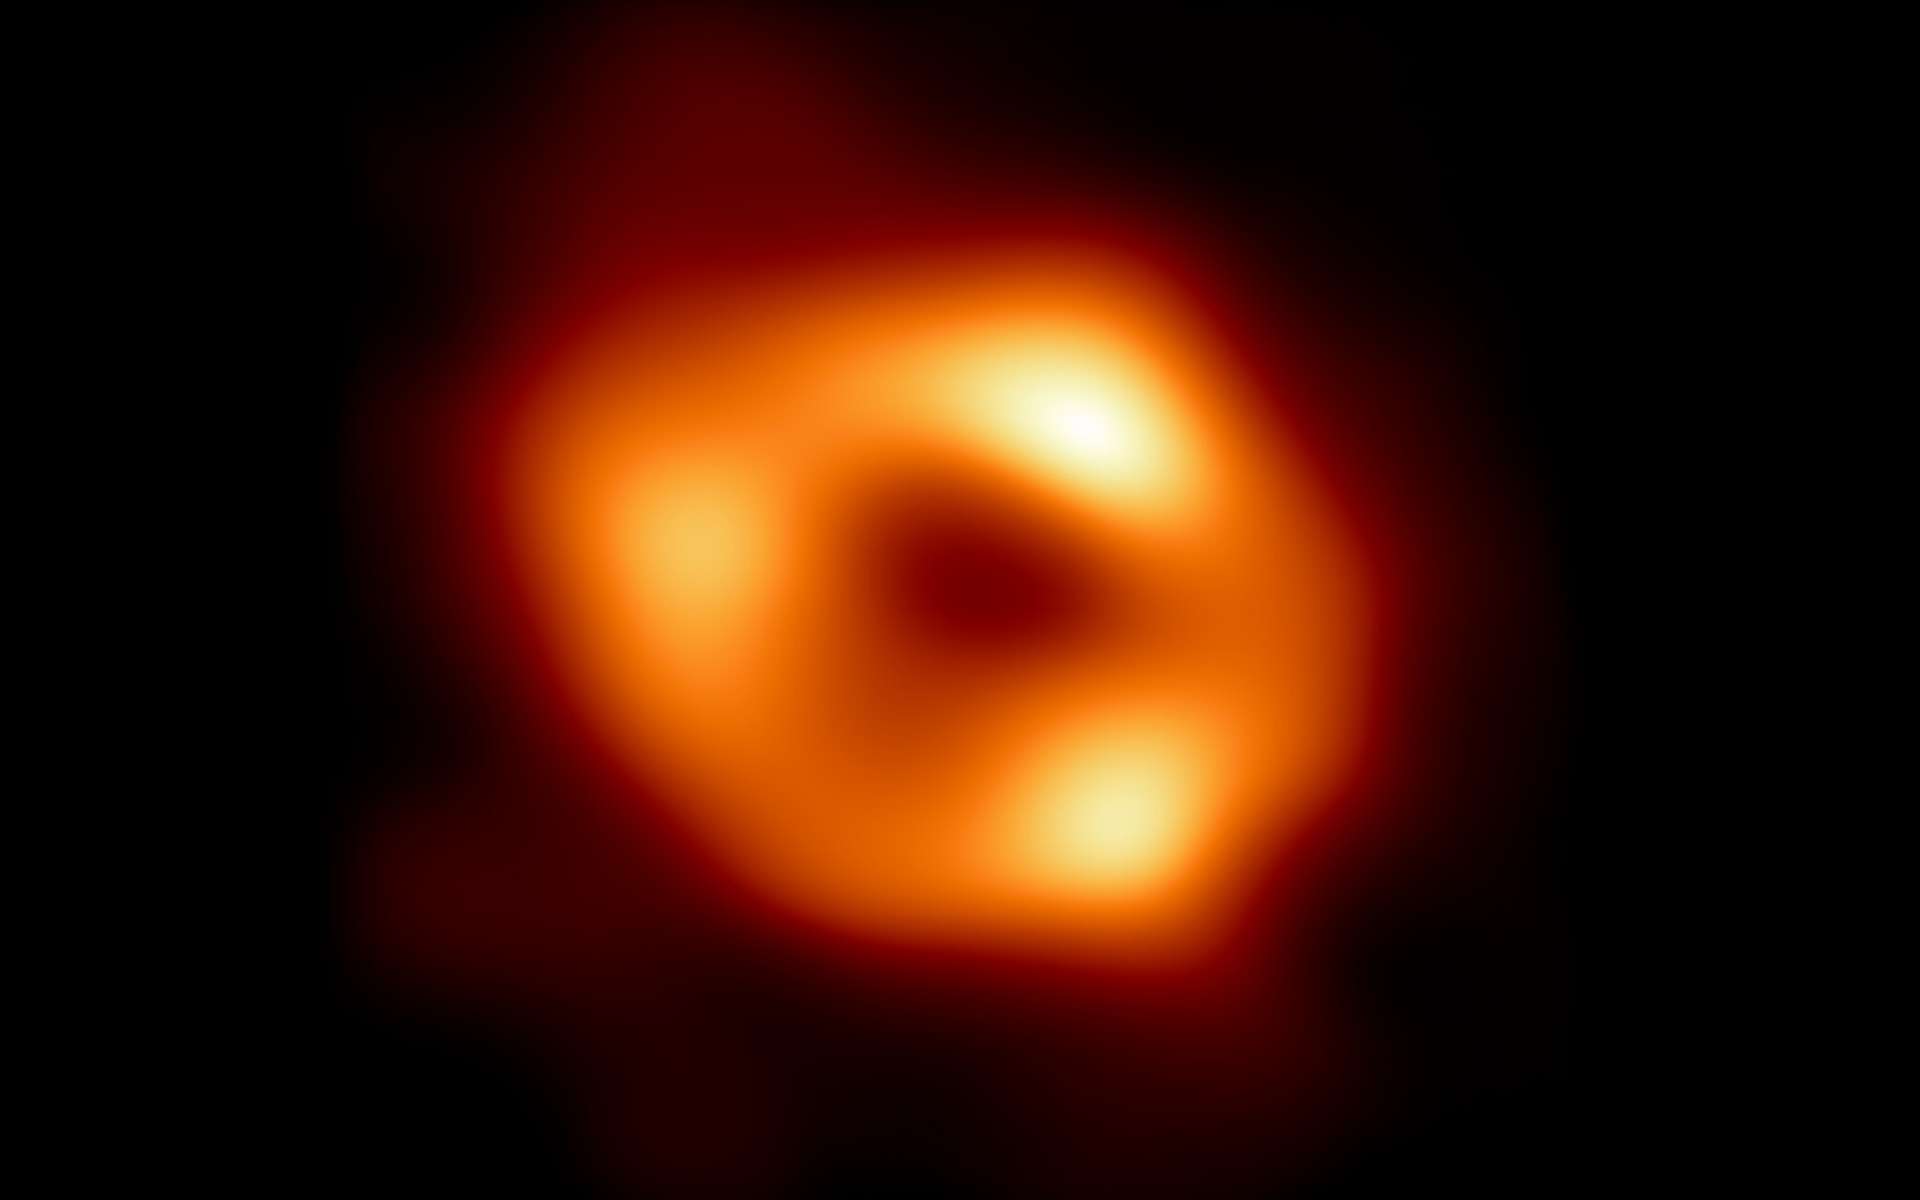 Voici la première image de Sgr A*, le trou noir supermassif au centre de notre galaxie, avec un fond noir ajouté pour s'adapter à des écrans plus larges. Il s'agit de la première preuve visuelle directe de la présence de ce trou noir. Elle a été obtenue par l'Event Horizon Telescope (EHT), un réseau qui relie huit observatoires radio existants sur la planète pour former un seul télescope virtuel de la taille de la Terre. Le télescope porte le nom de l'horizon des événements, la limite du trou noir au-delà de laquelle aucune lumière ne peut s'échapper. © EHT Collaboration